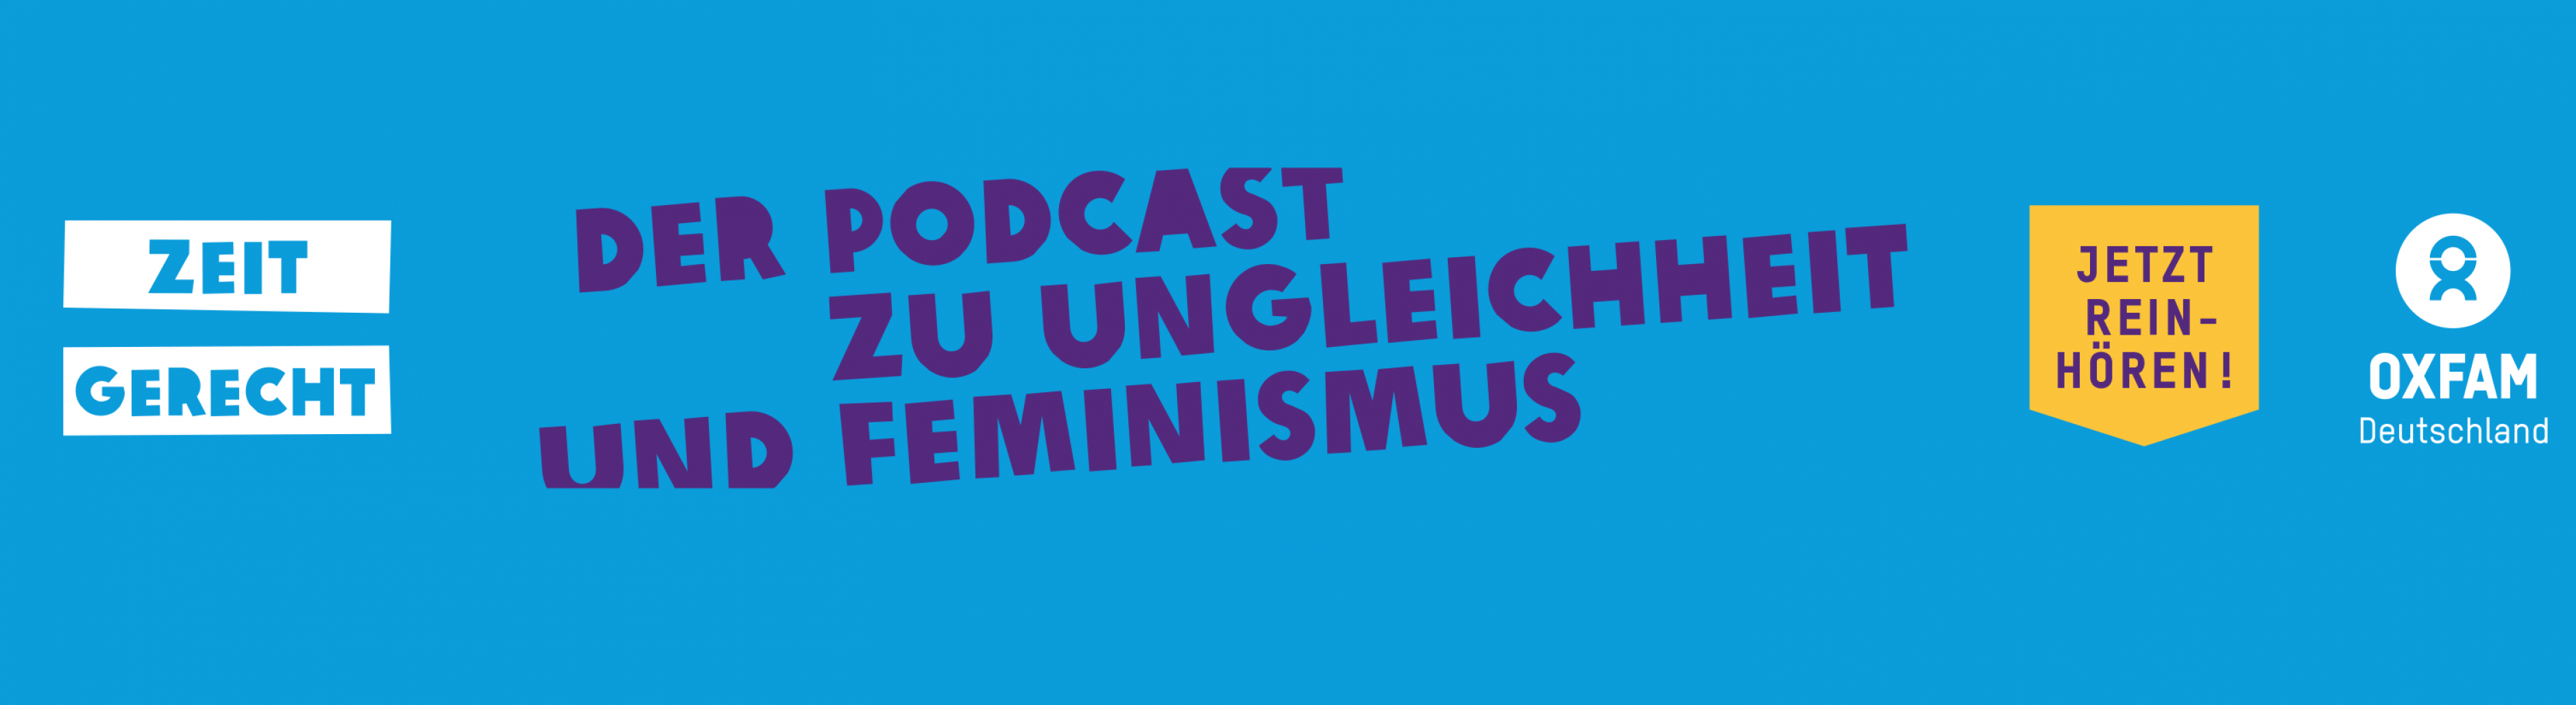 Zeitgerecht: Der Podcast zu Ungleichheit und Feminismus